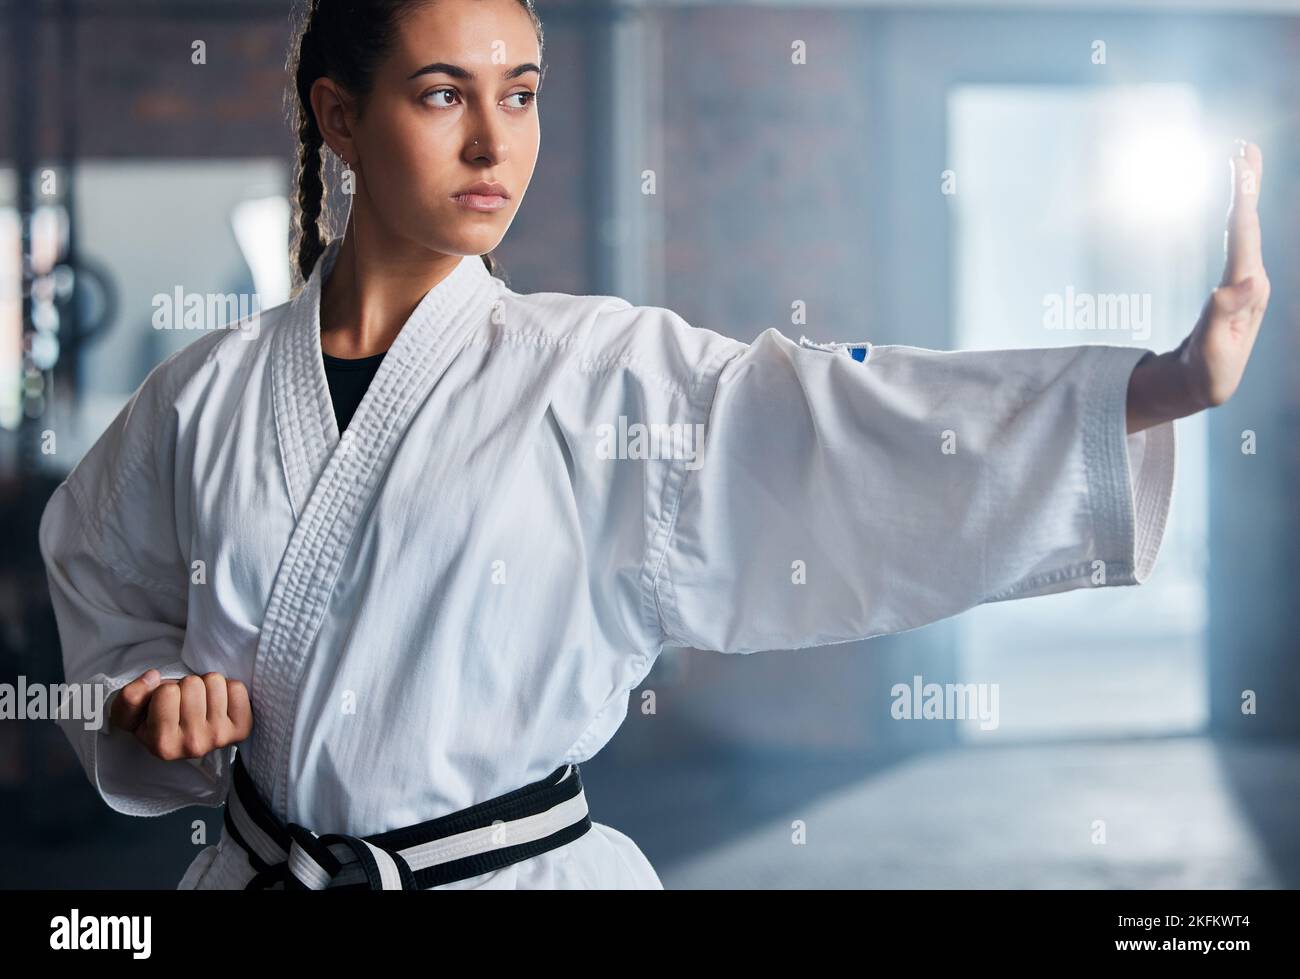 Karate, fitness e sport con la donna, allenamento e allenamento per lotta, fitness e esercizio in palestra. Atleta femminile e atteggiamento da campione per sé Foto Stock